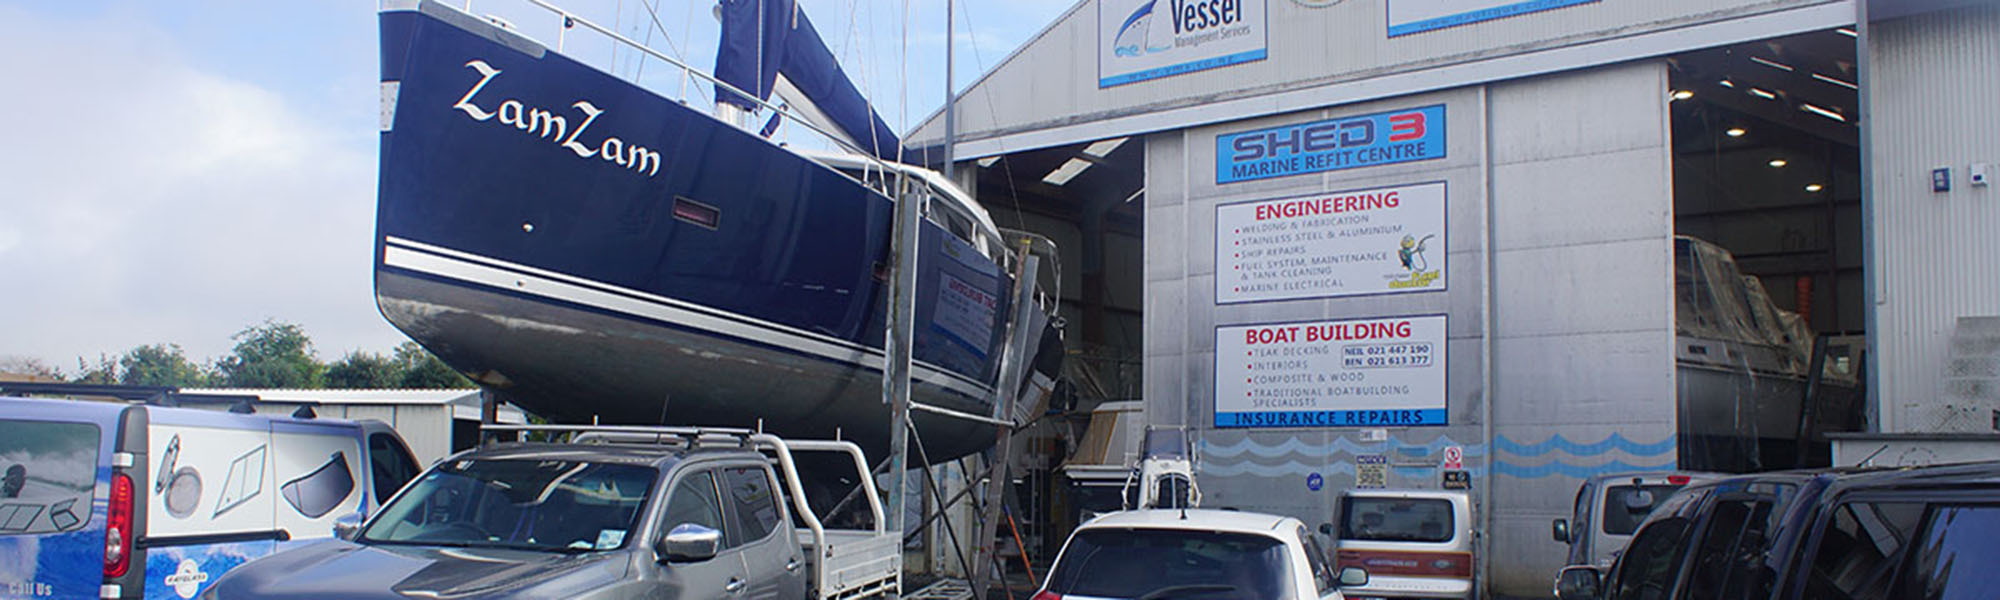 vessel-management-service-workshop-banner